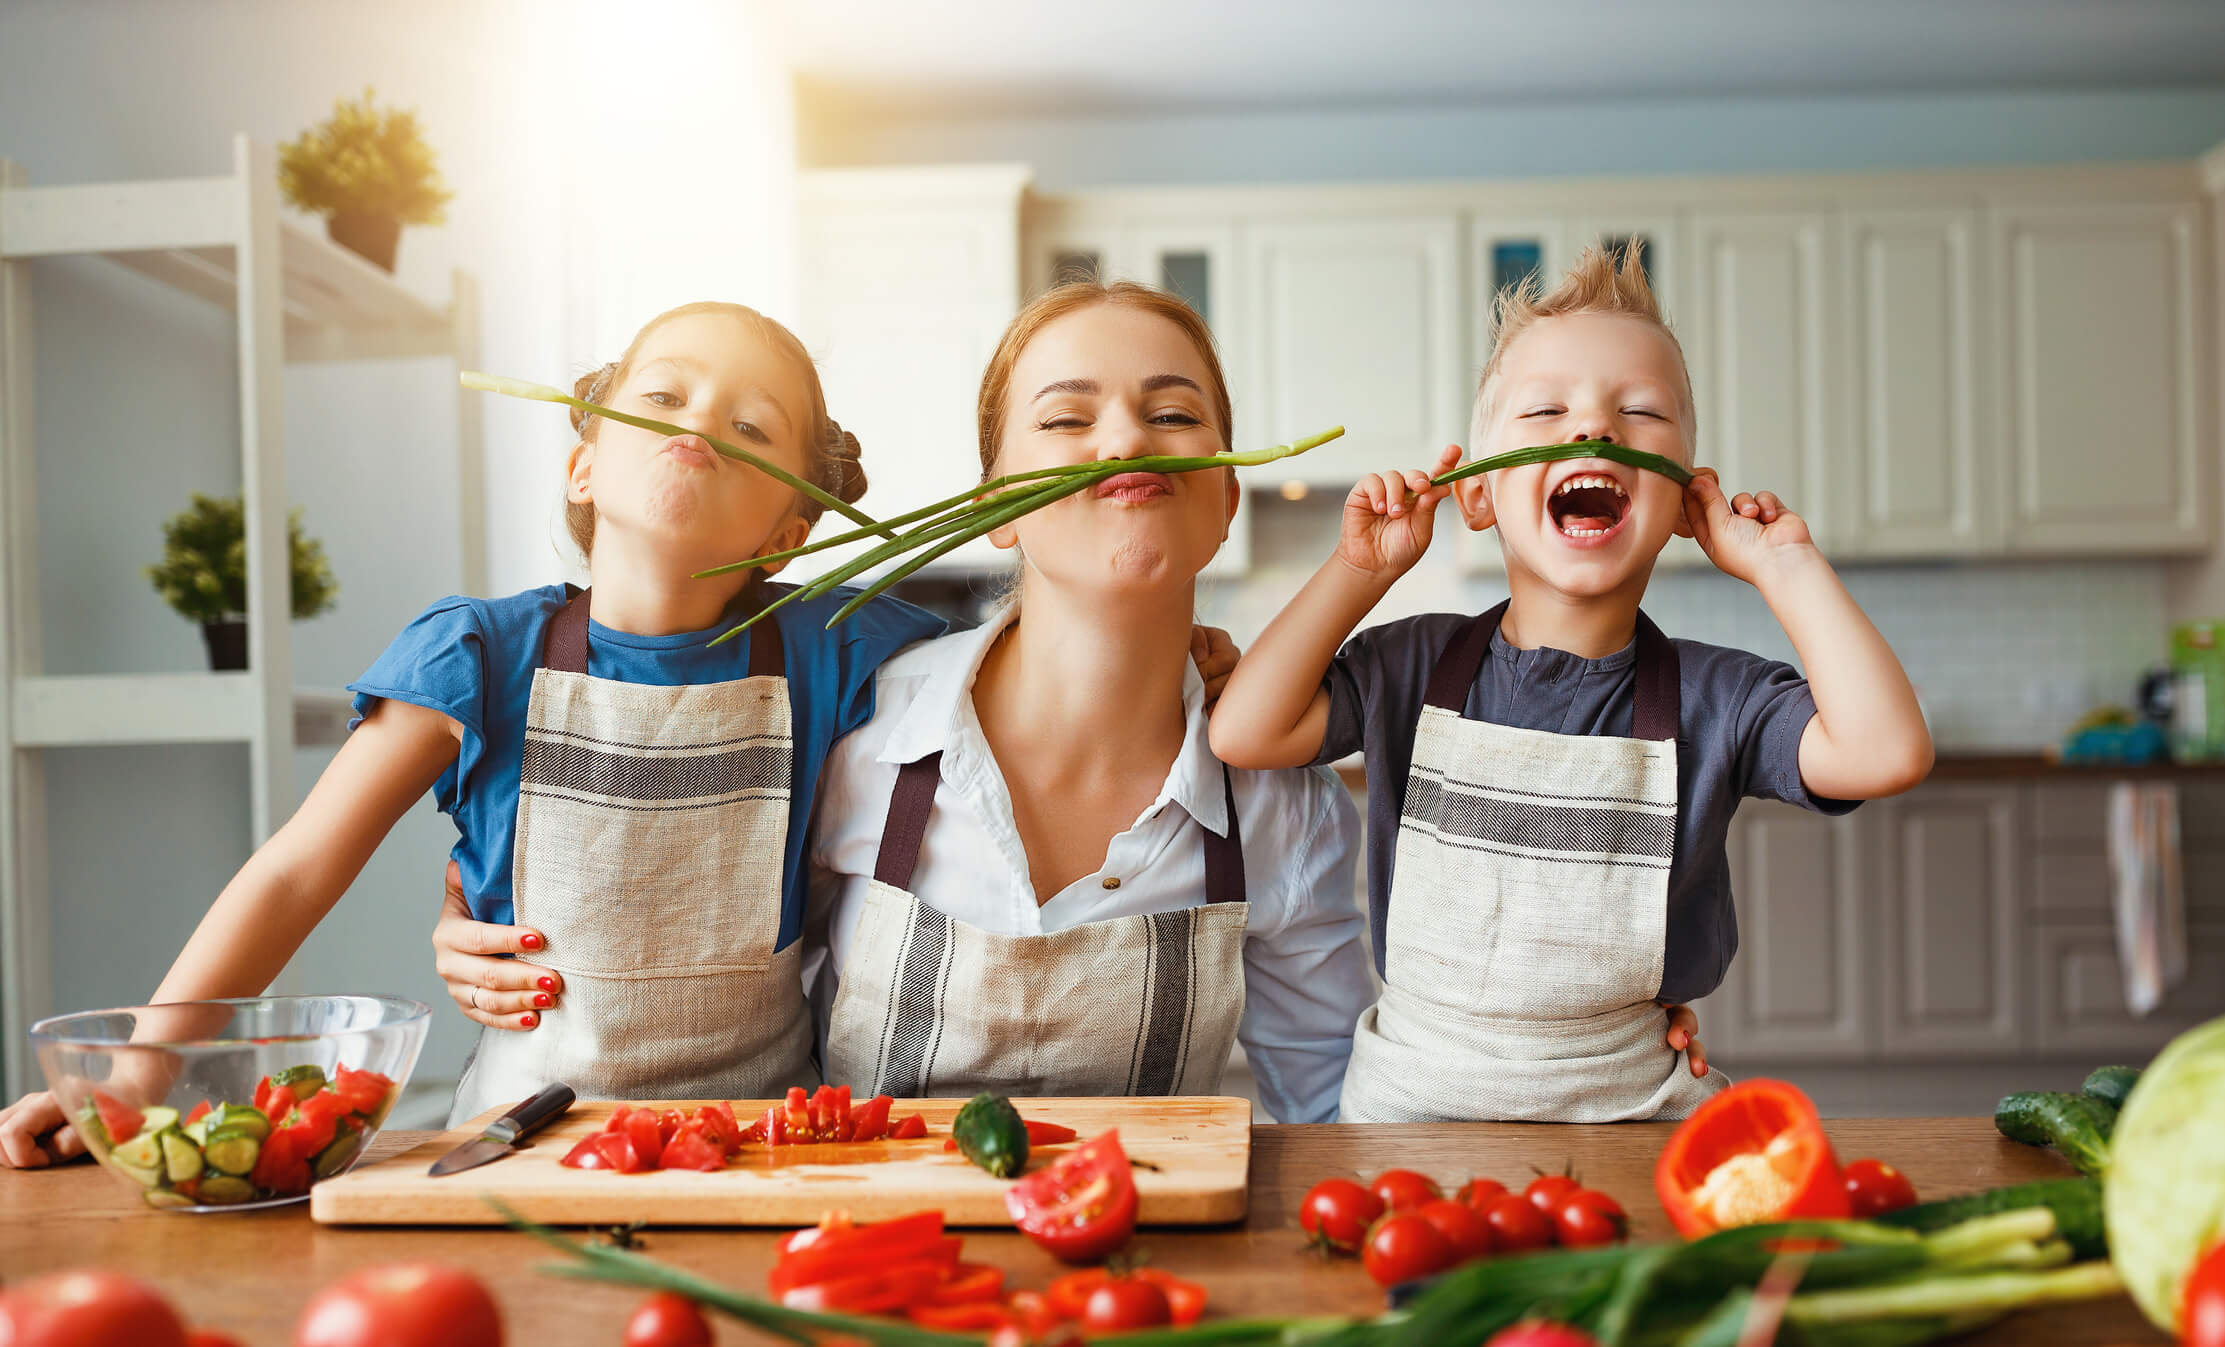 mejores alimentos saludables verduras tomate verdeo cebolla vegetales cocina madre mama nino nina ninos nenes hijos felices